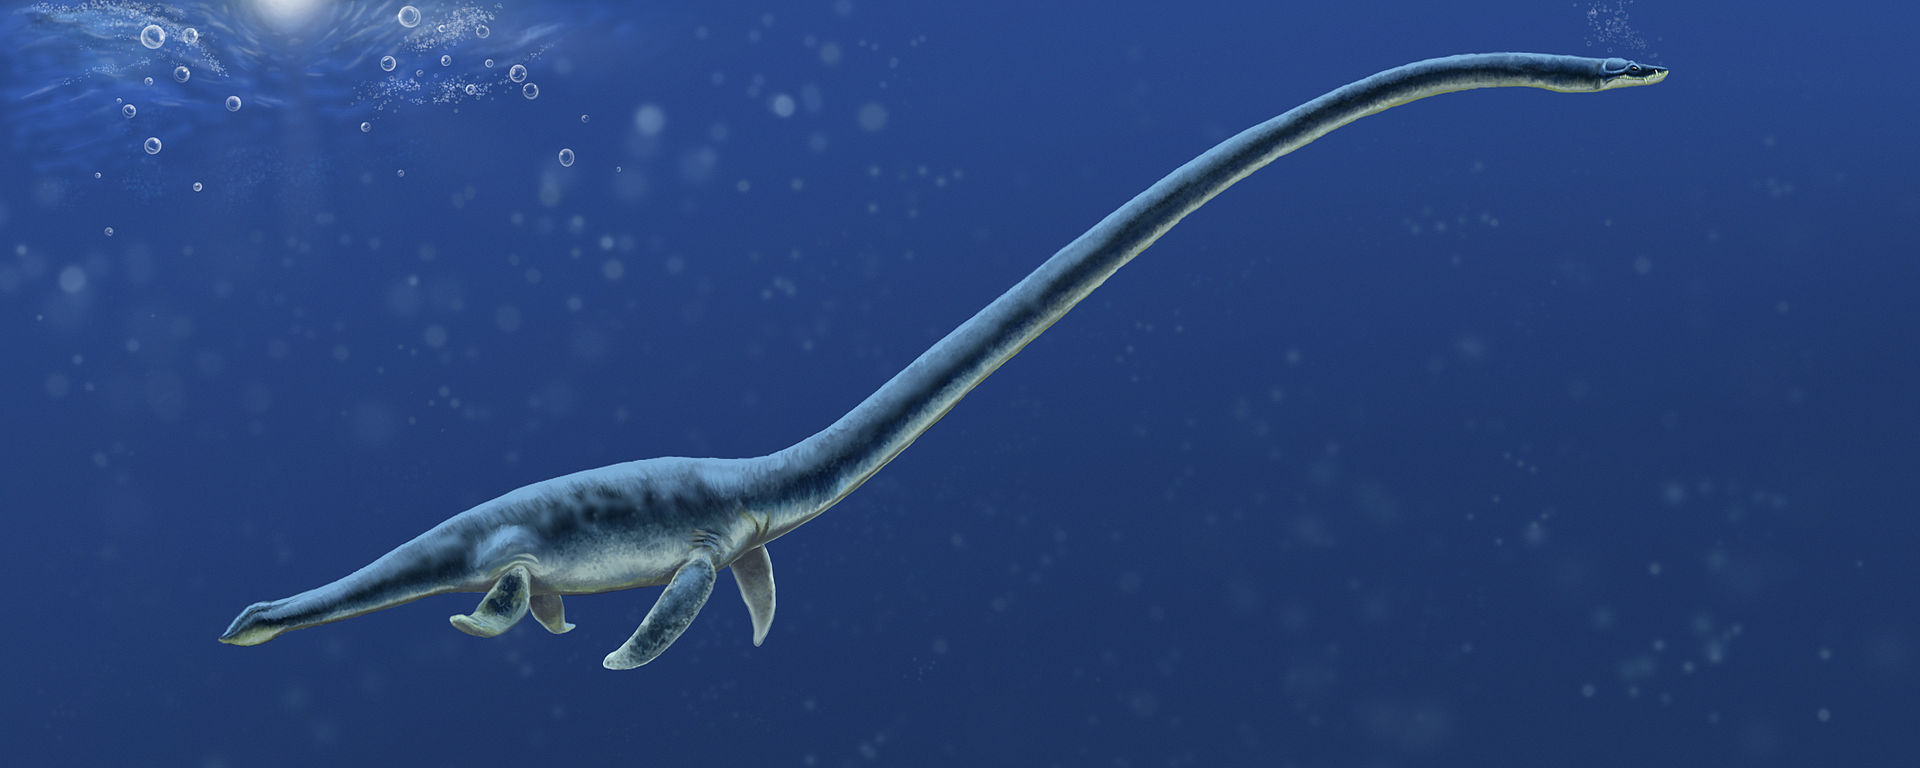 Rekonstrukce pravděpodobného vzezření severoamerického elasmosaurida druhu Albertonectes vanderveldei, žijícího v období geologického věku kampán (asi před 73,5 miliony let) v tehdejším velkém vnitrozemském moři. Z celkové téměř dvanáctimetrové délky